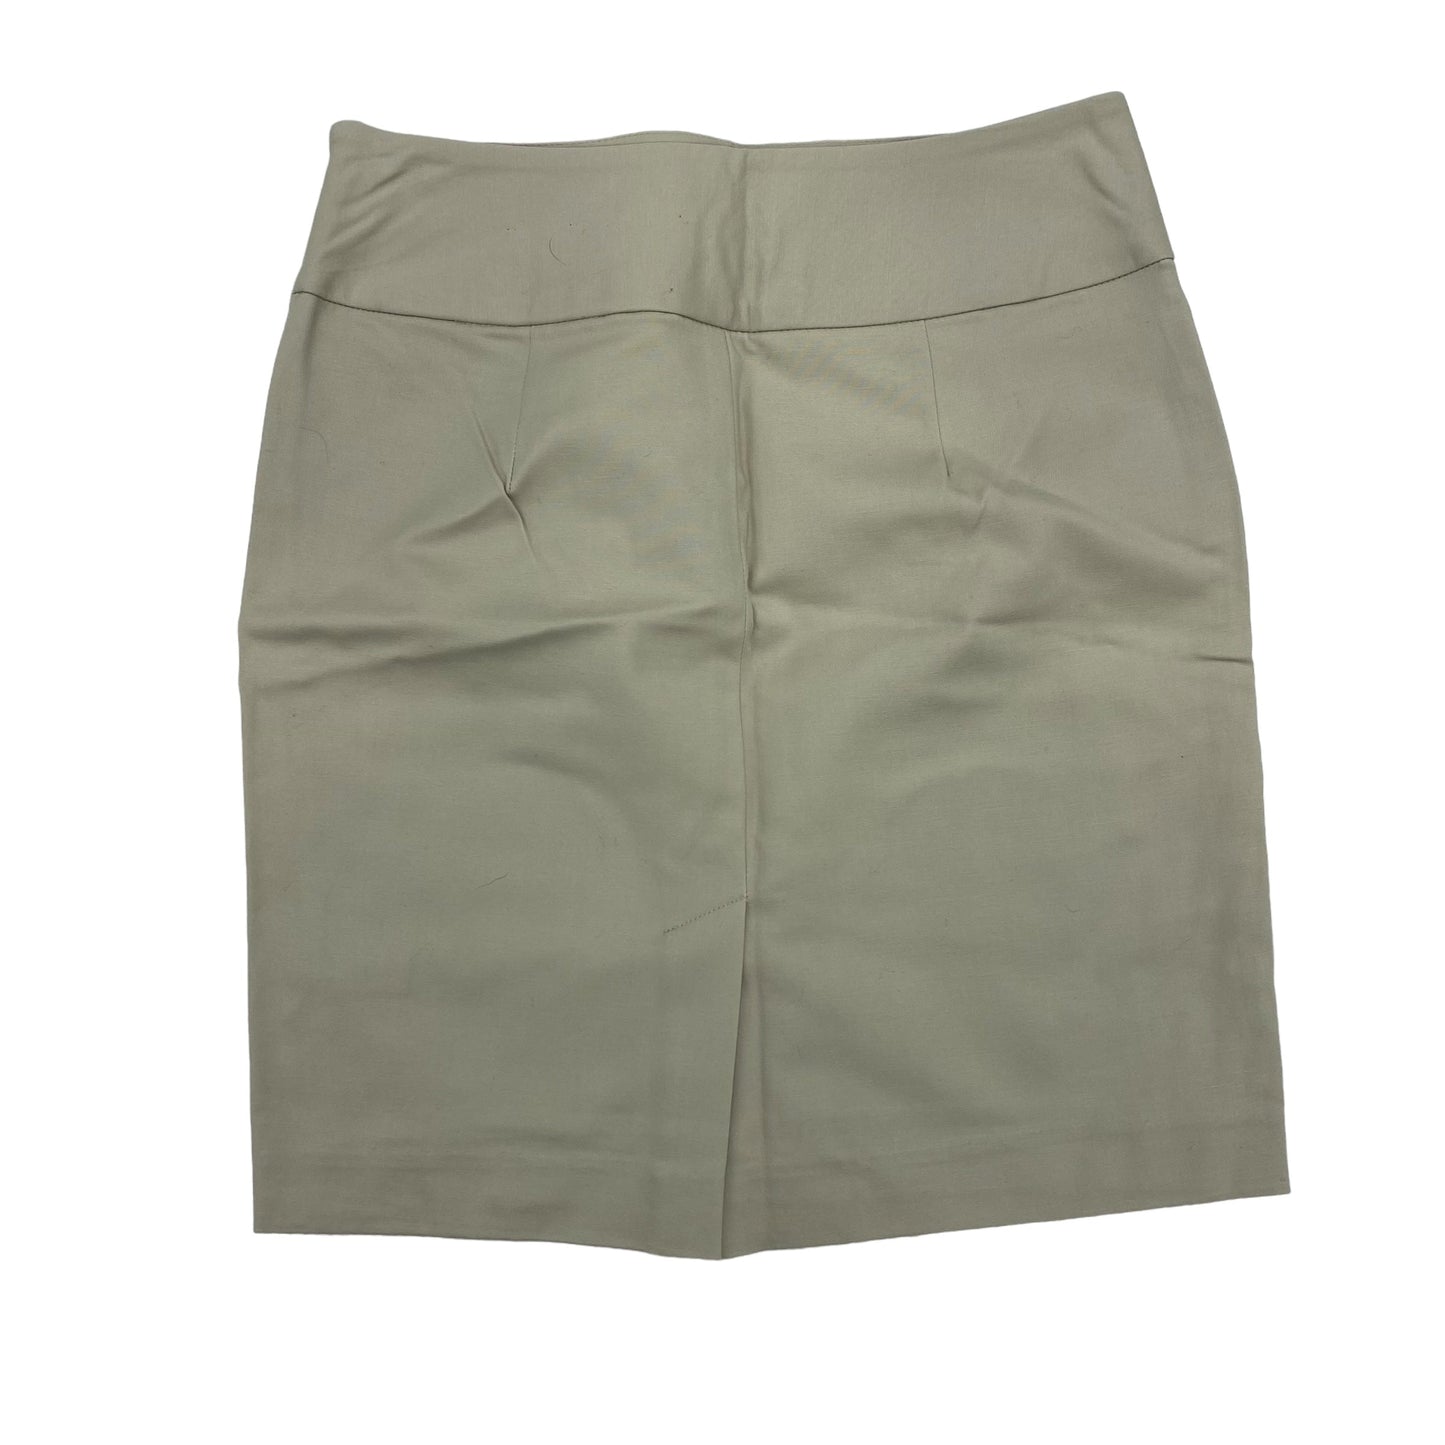 Tan Skirt Mini & Short Banana Republic, Size 2